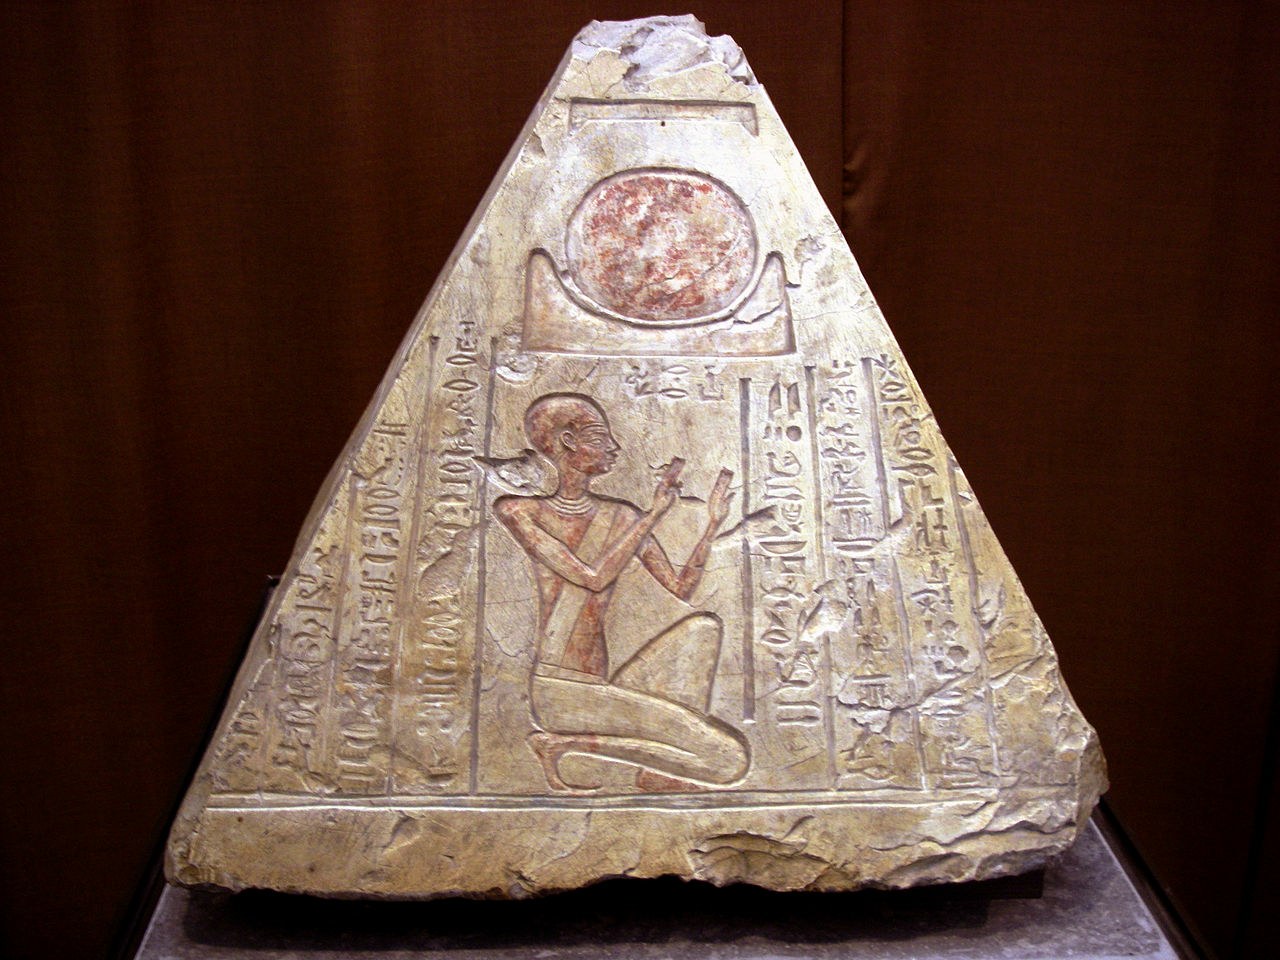 Drevni telegraf: Svjetlosni signali korišteni za komunikaciju u drevnom Egiptu? 1